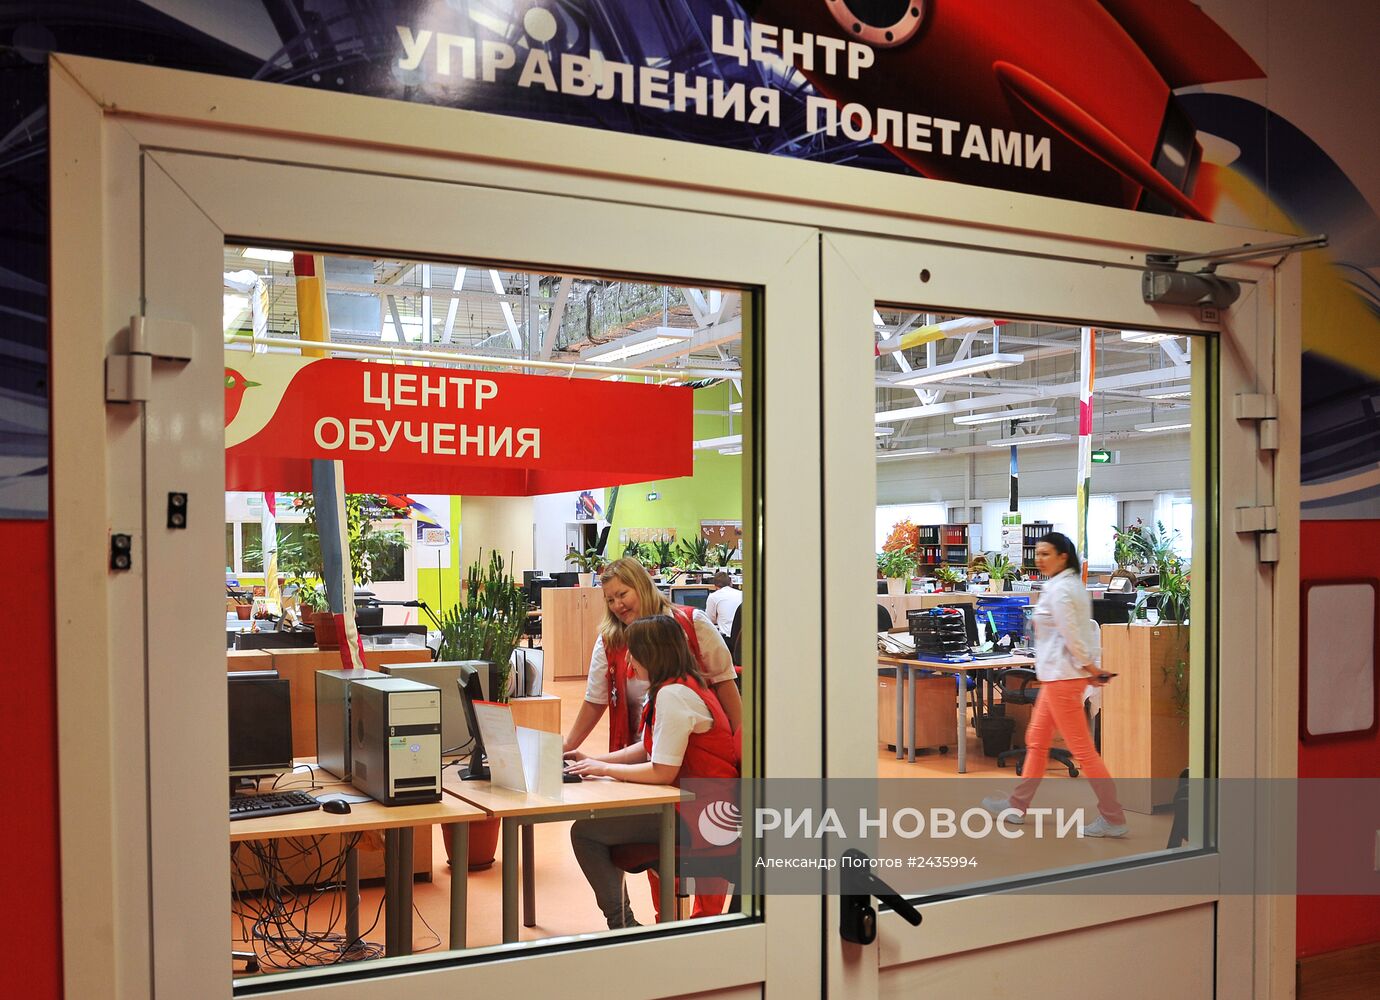 Работа гипермаркета "Ашан" в Ростове-на-Дону